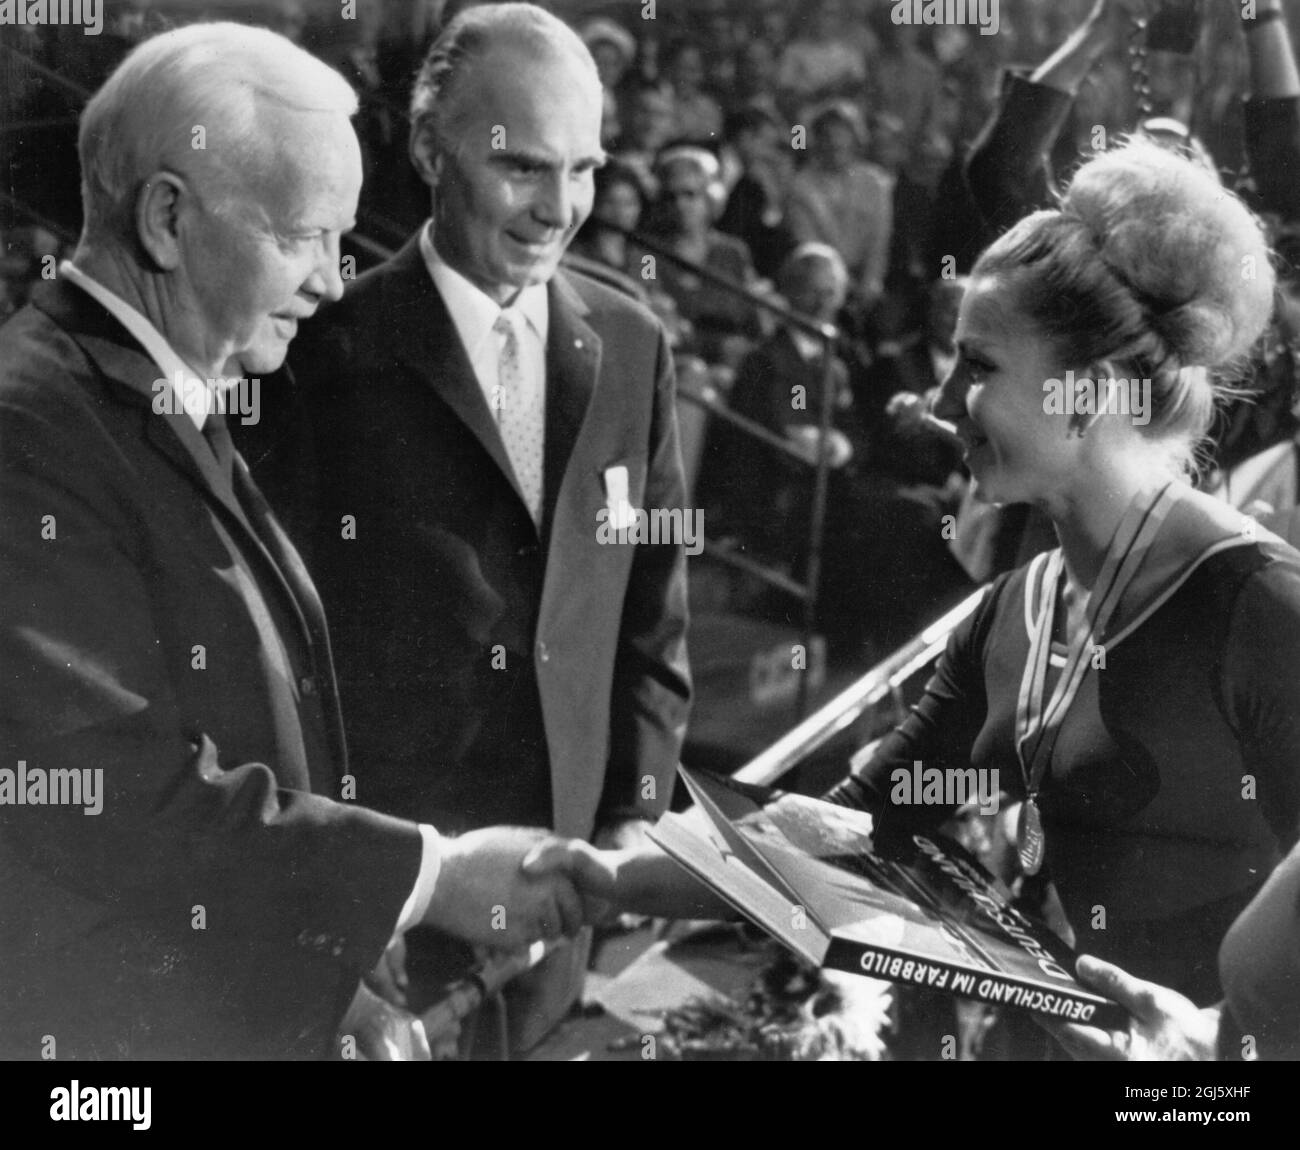 Dortmund, Westdeutschland: Bundespräsidentin Heirrich Luebke (links) gratuliert der Tschechoslowakei Vera Caslavska , nachdem sie bei den Weltmeisterschaften der Gymnastik die Goldmedaille für die Damen-Kombi gewonnen hatte. September 1966 Stockfoto